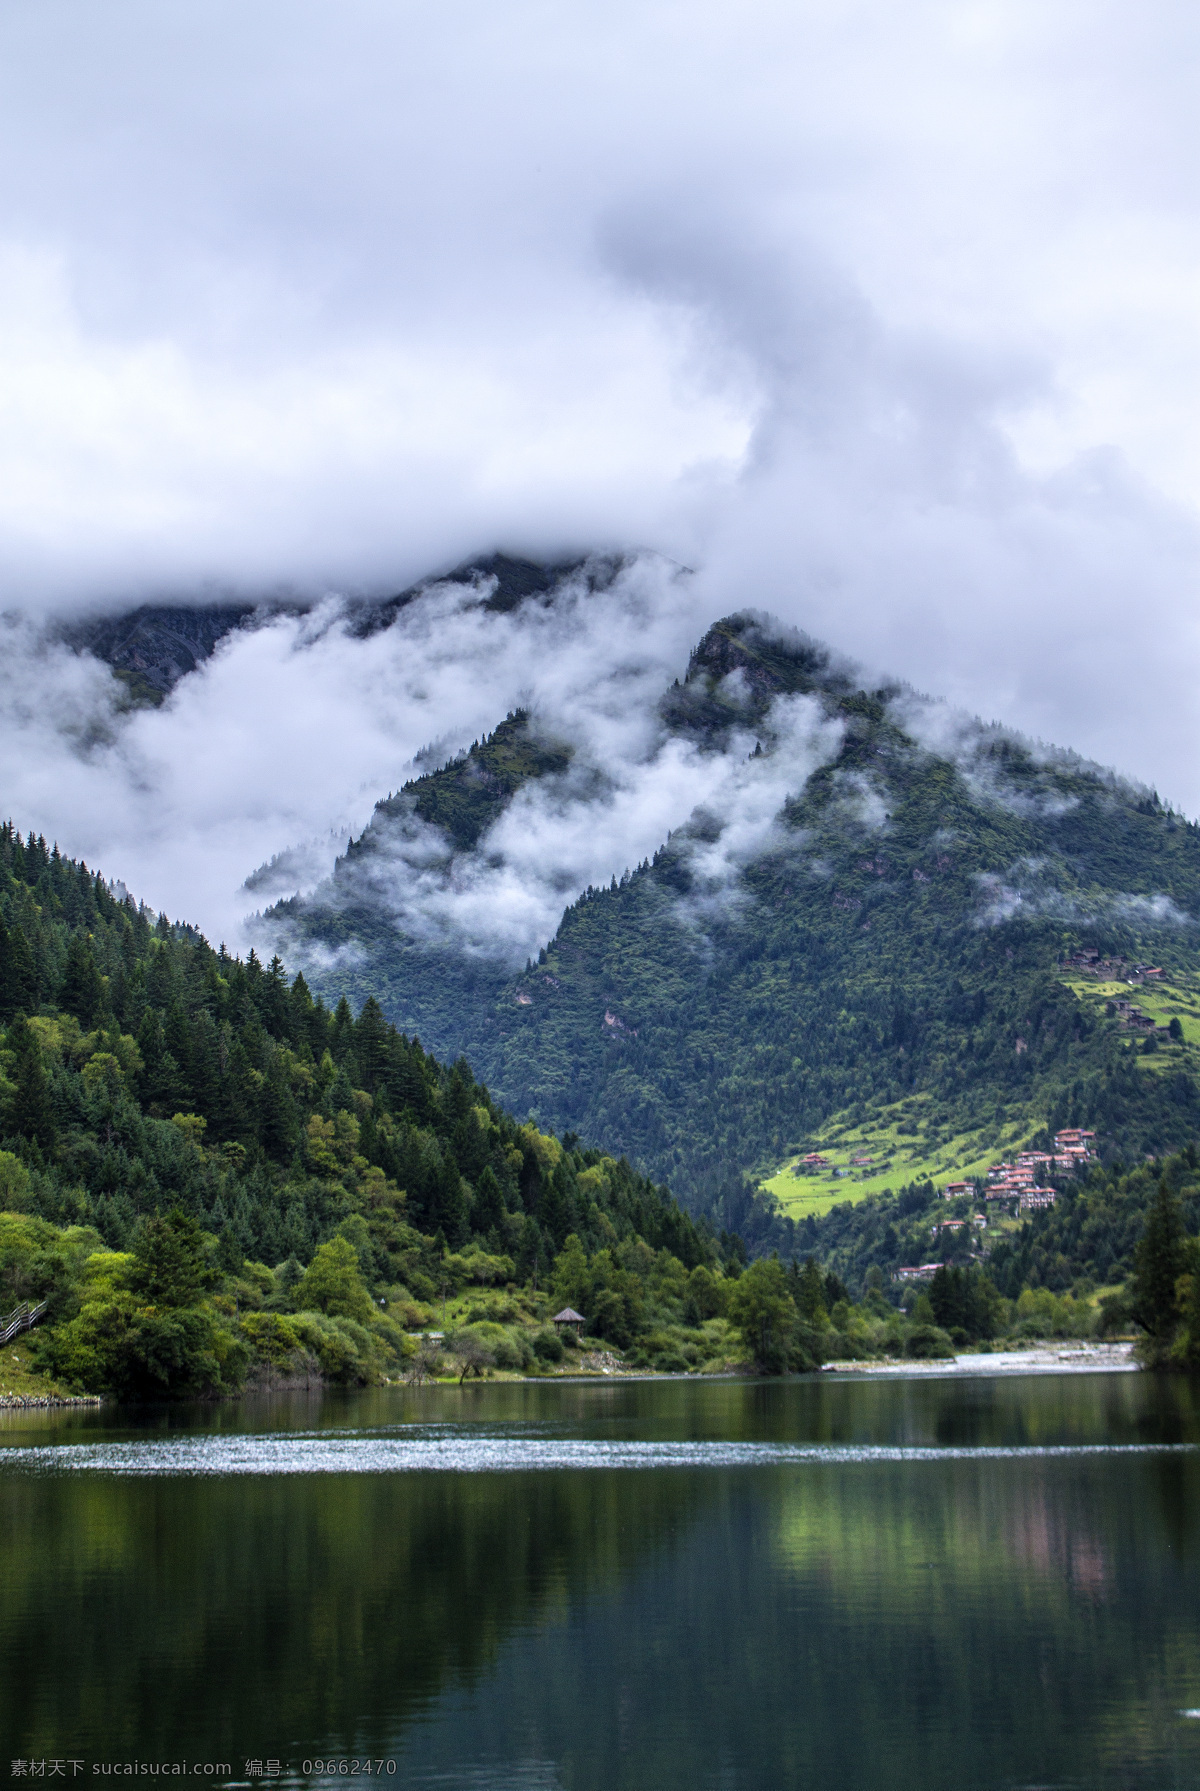 高原湖泊 海子 枯树 原始森林 溪流 藏寨 藏族 高原风光 生态湖泊 大自然 自然风景 自然景观 山水风景